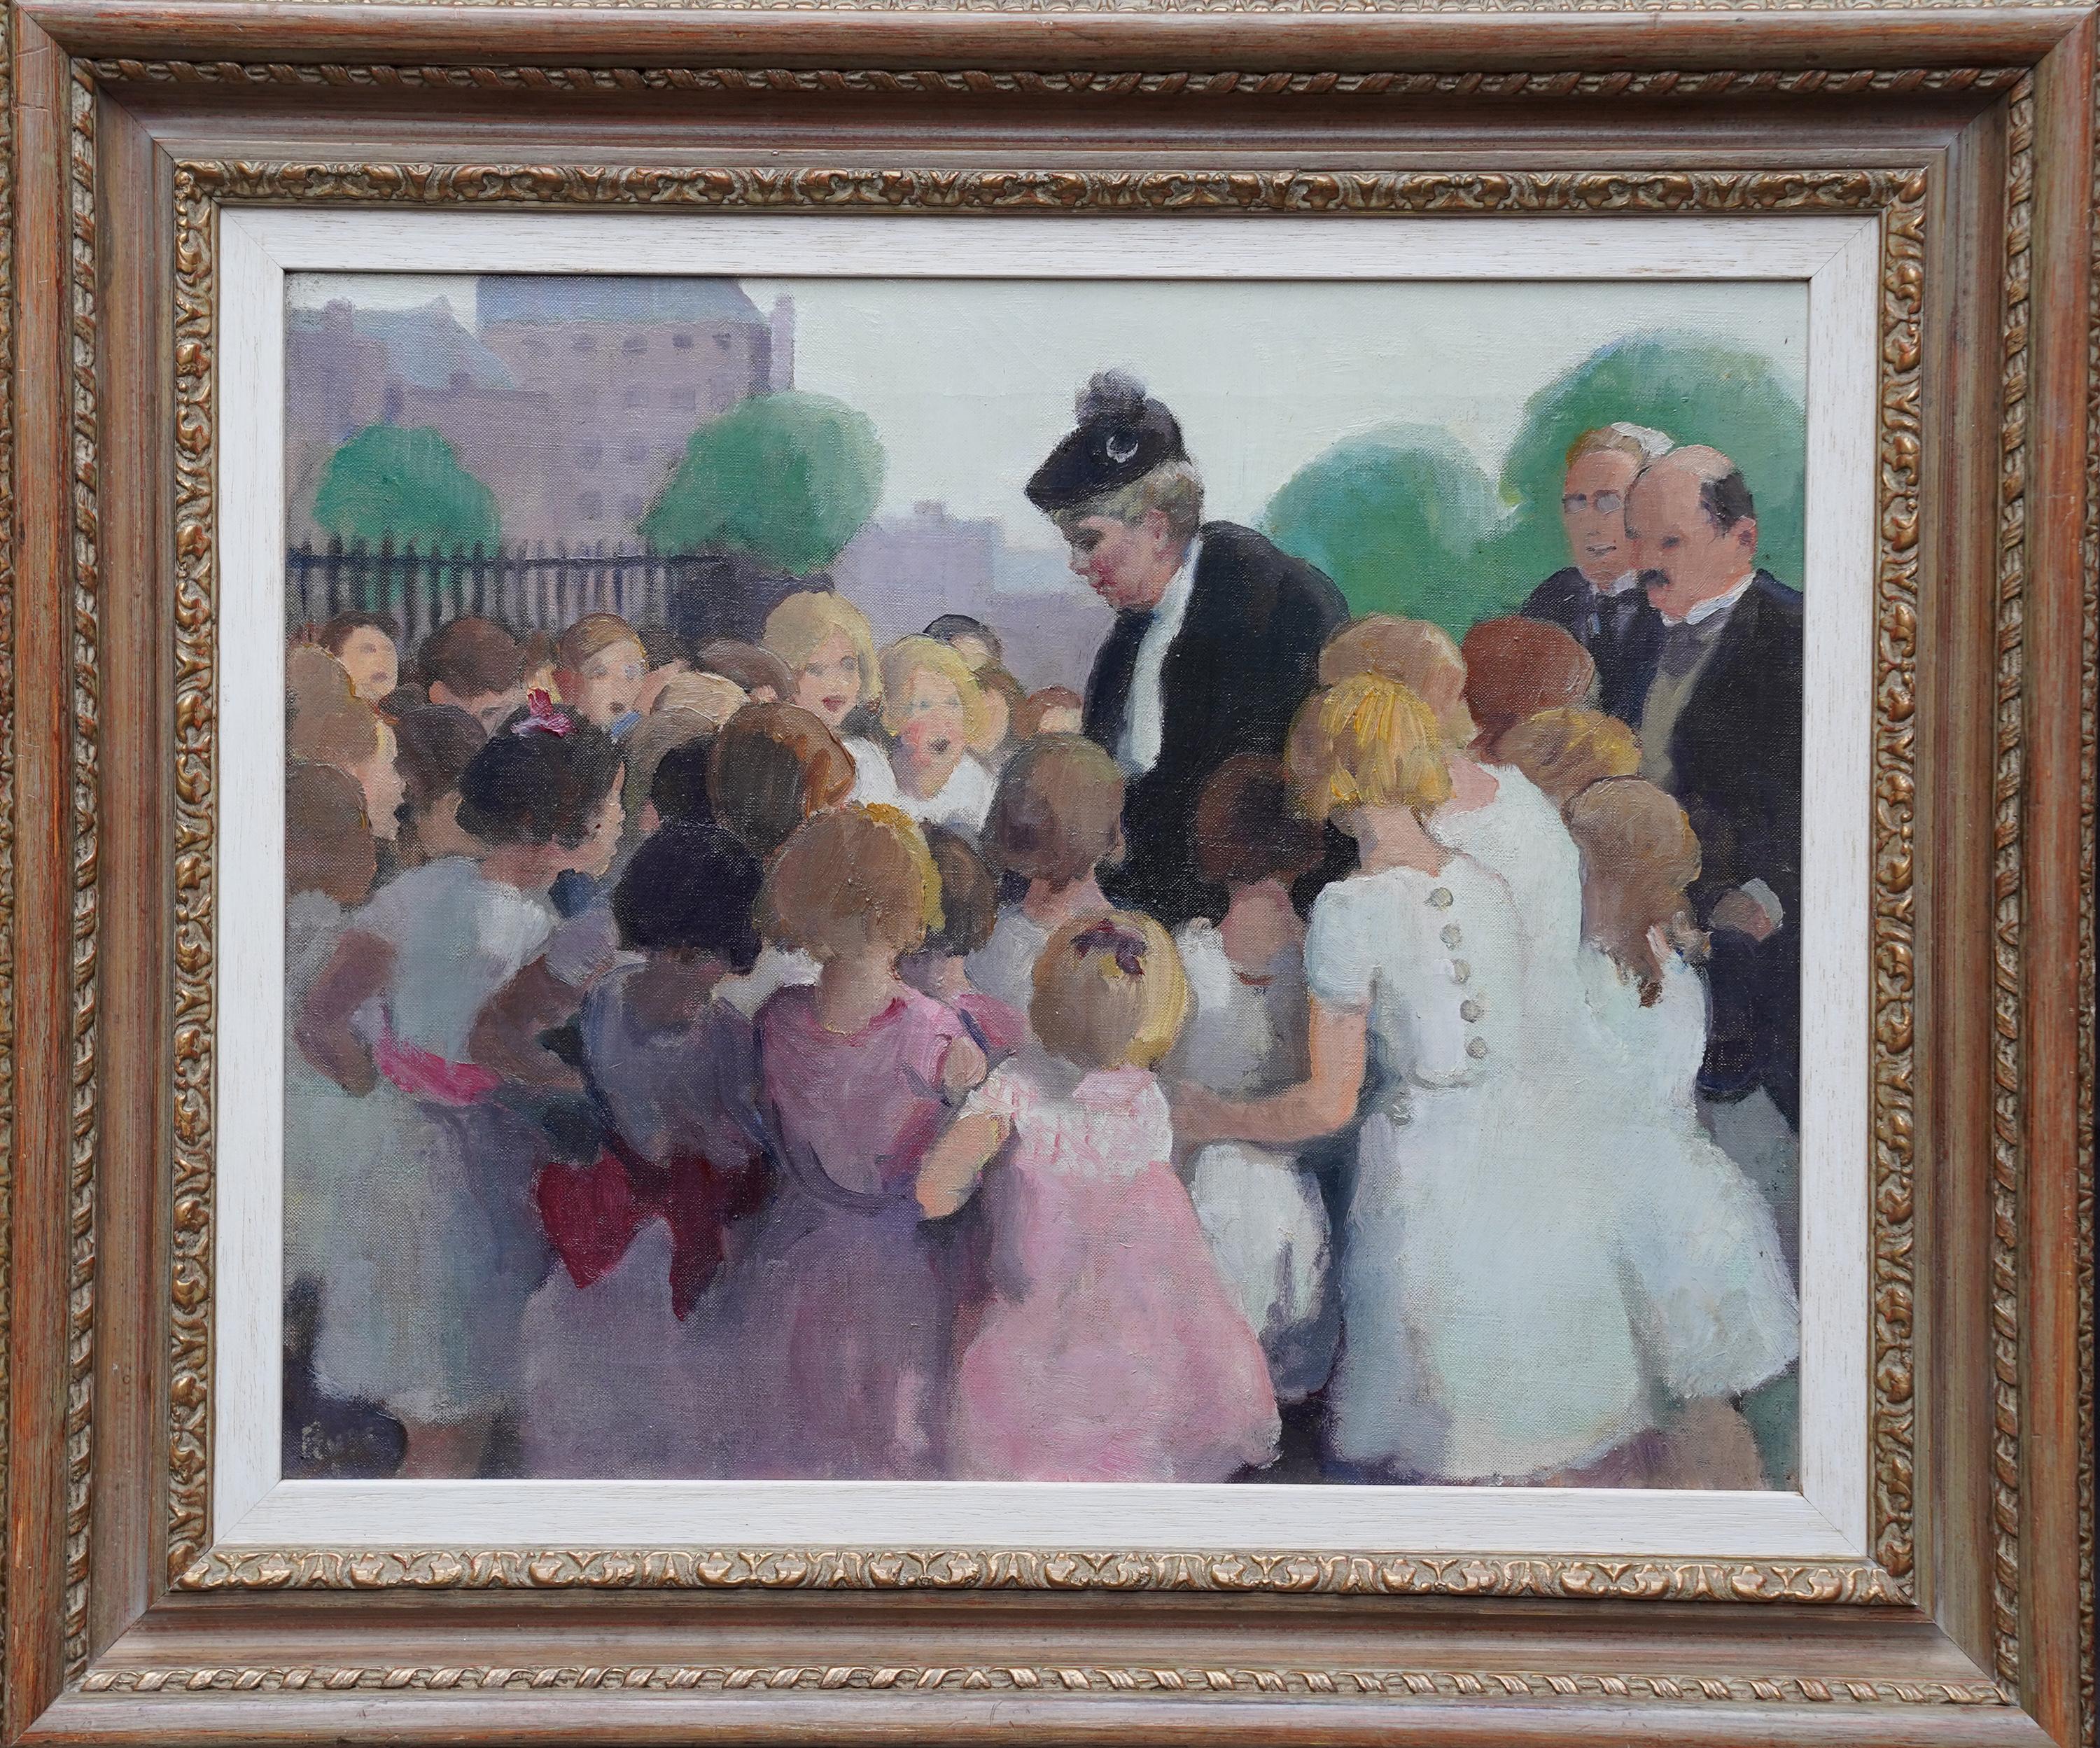 Portrait Painting Spencer Pryse - Les enfants de l'école Queen Mary Greeting - Peinture à l'huile de portrait de la royauté britannique de 1910